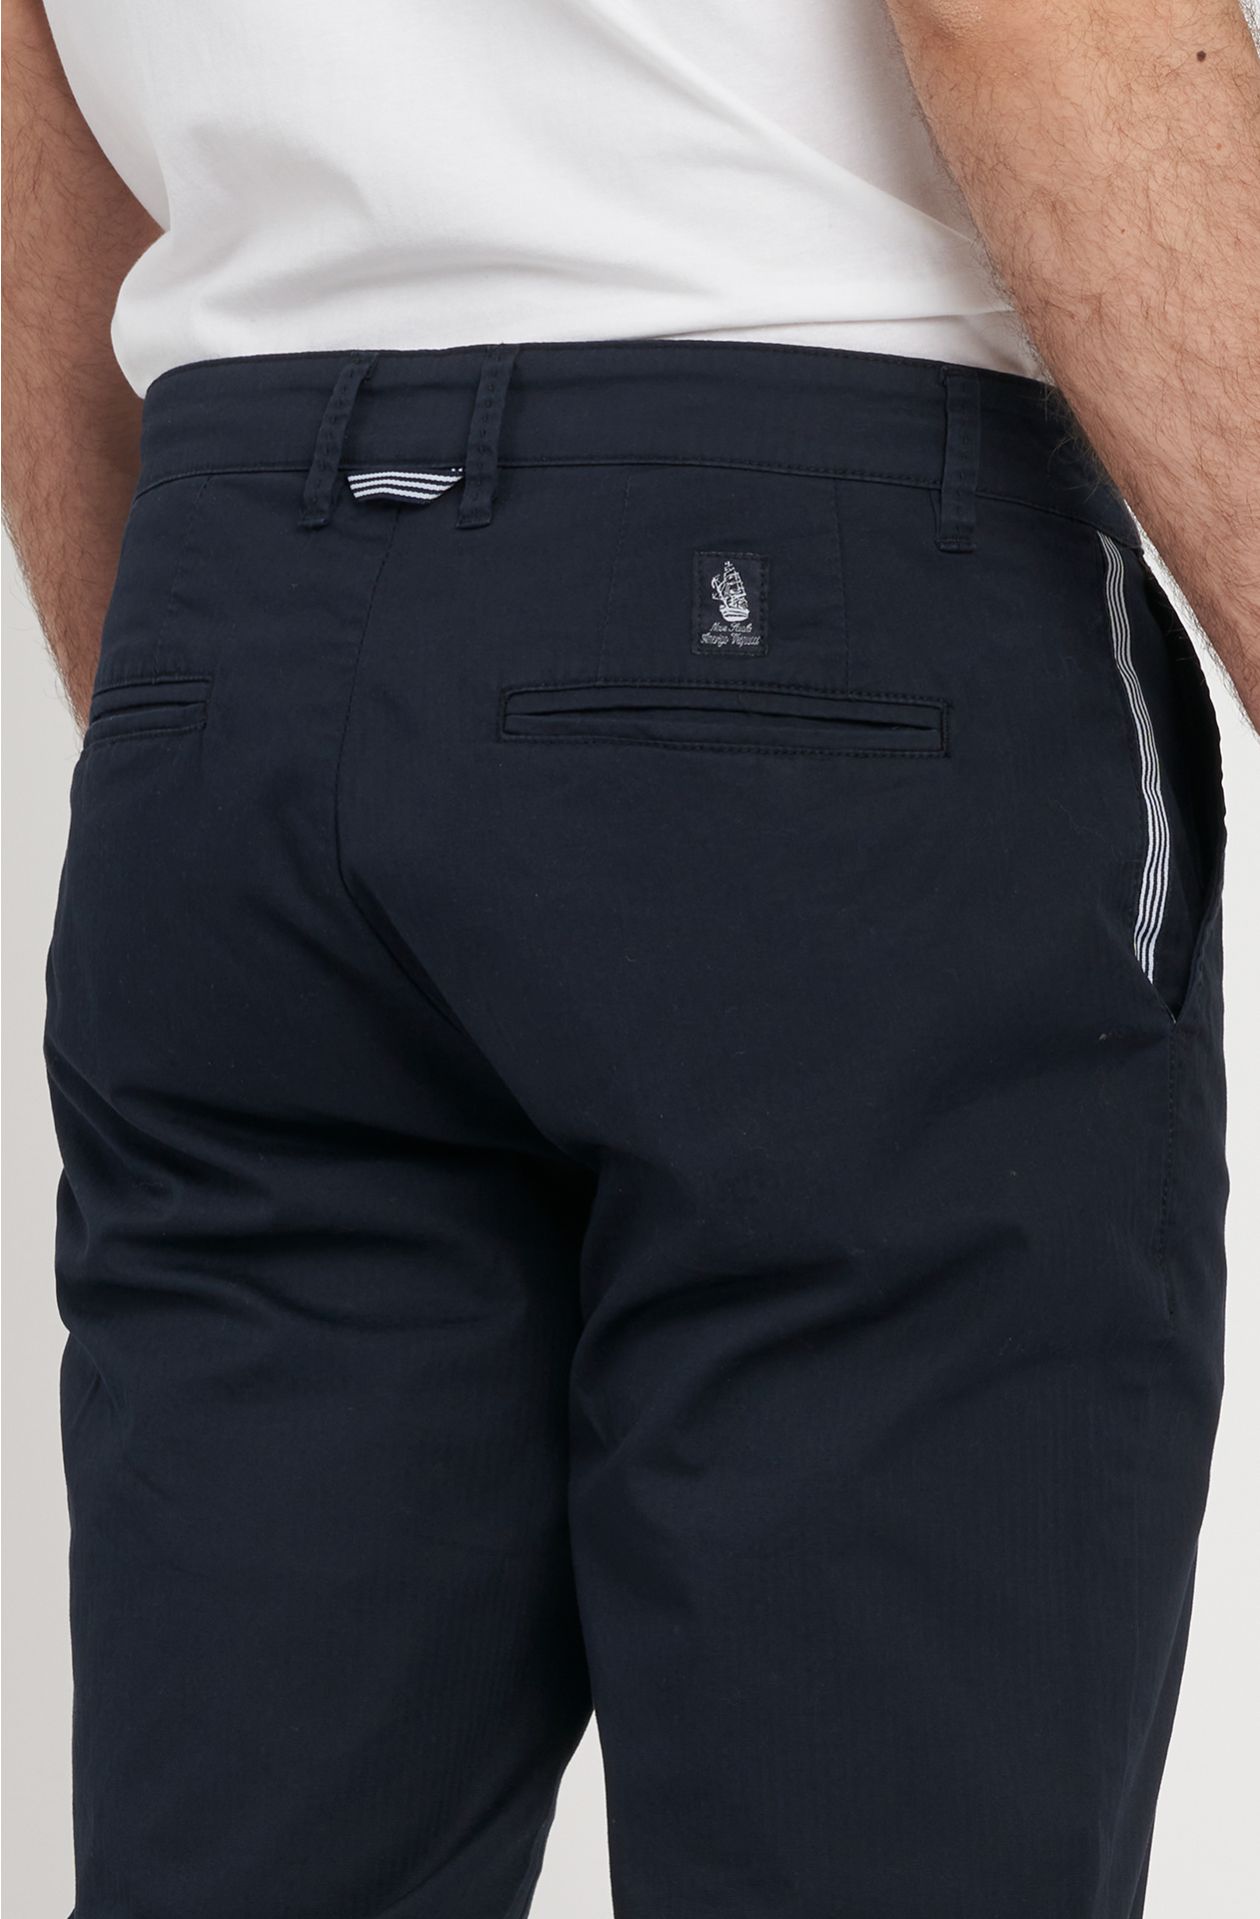 Amerigo Vespucci line trousers